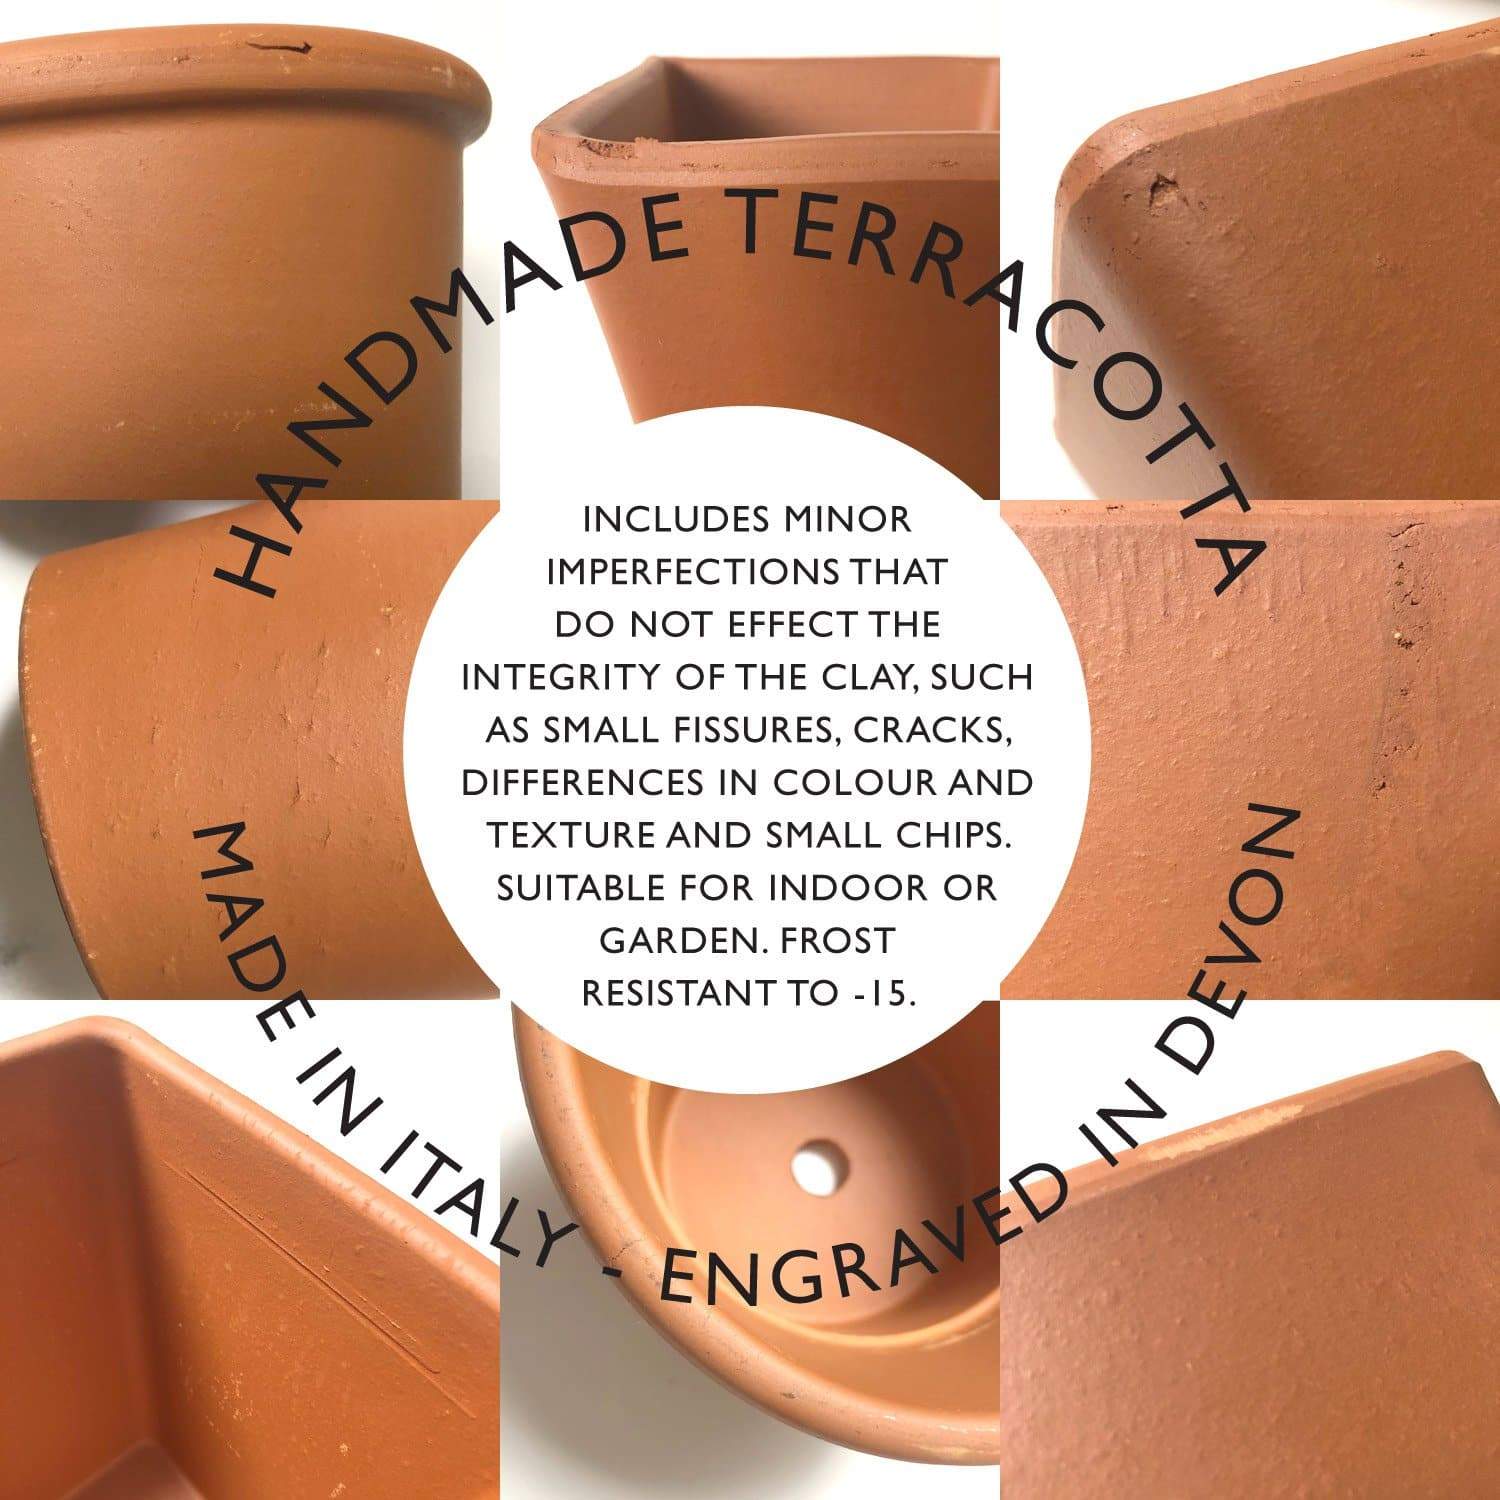 letterfest terracotta Engraved Terracotta Name Pot